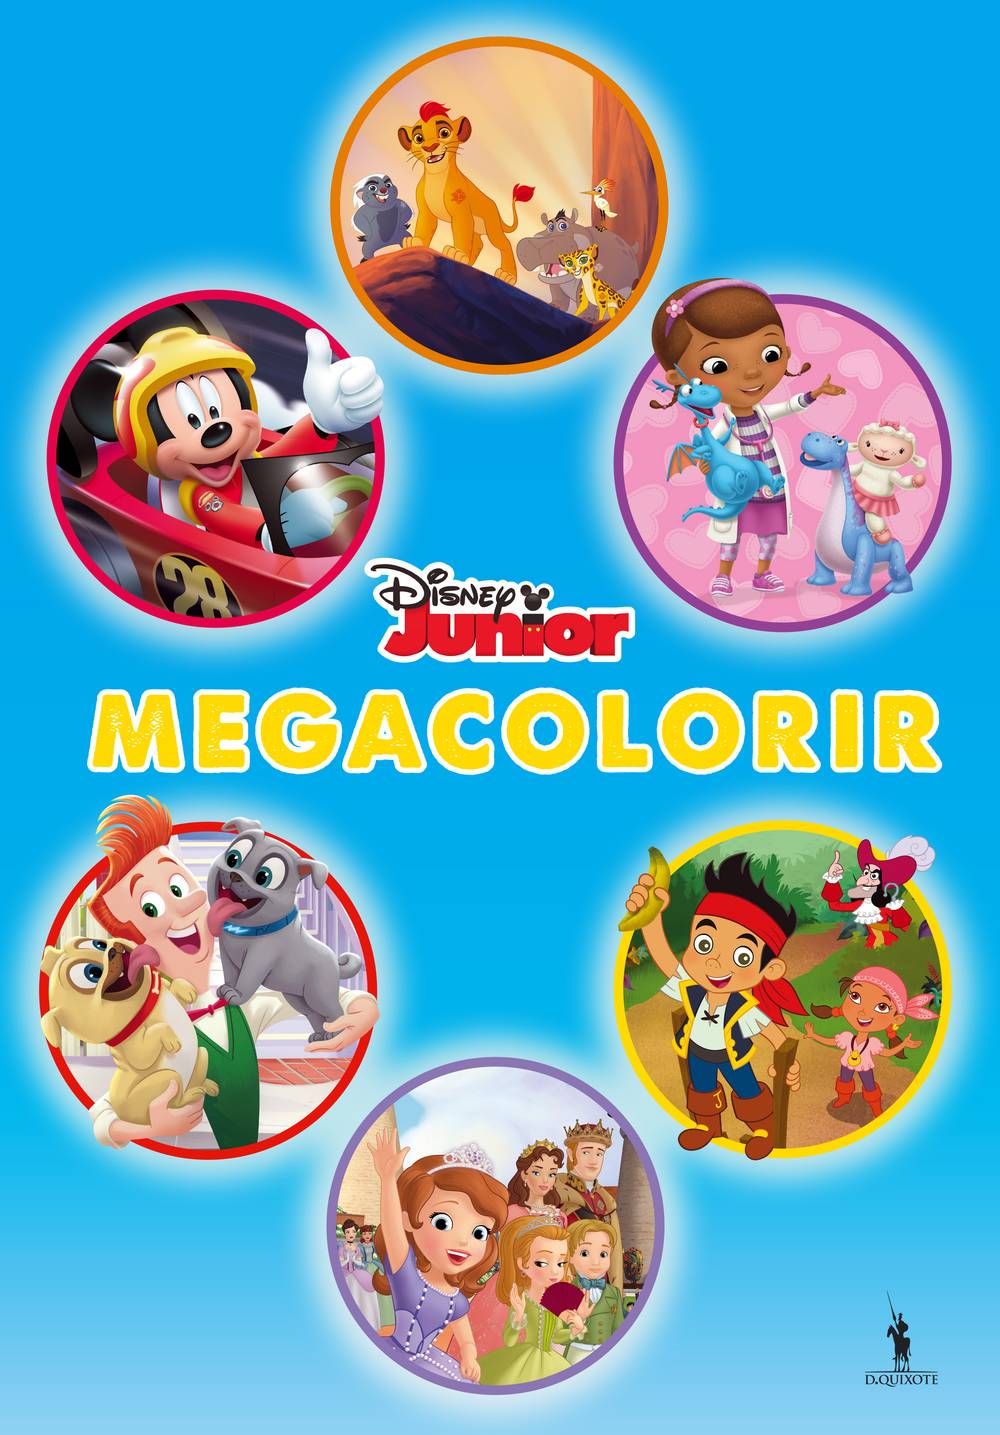 Megacolorir Disney Junior de Disney